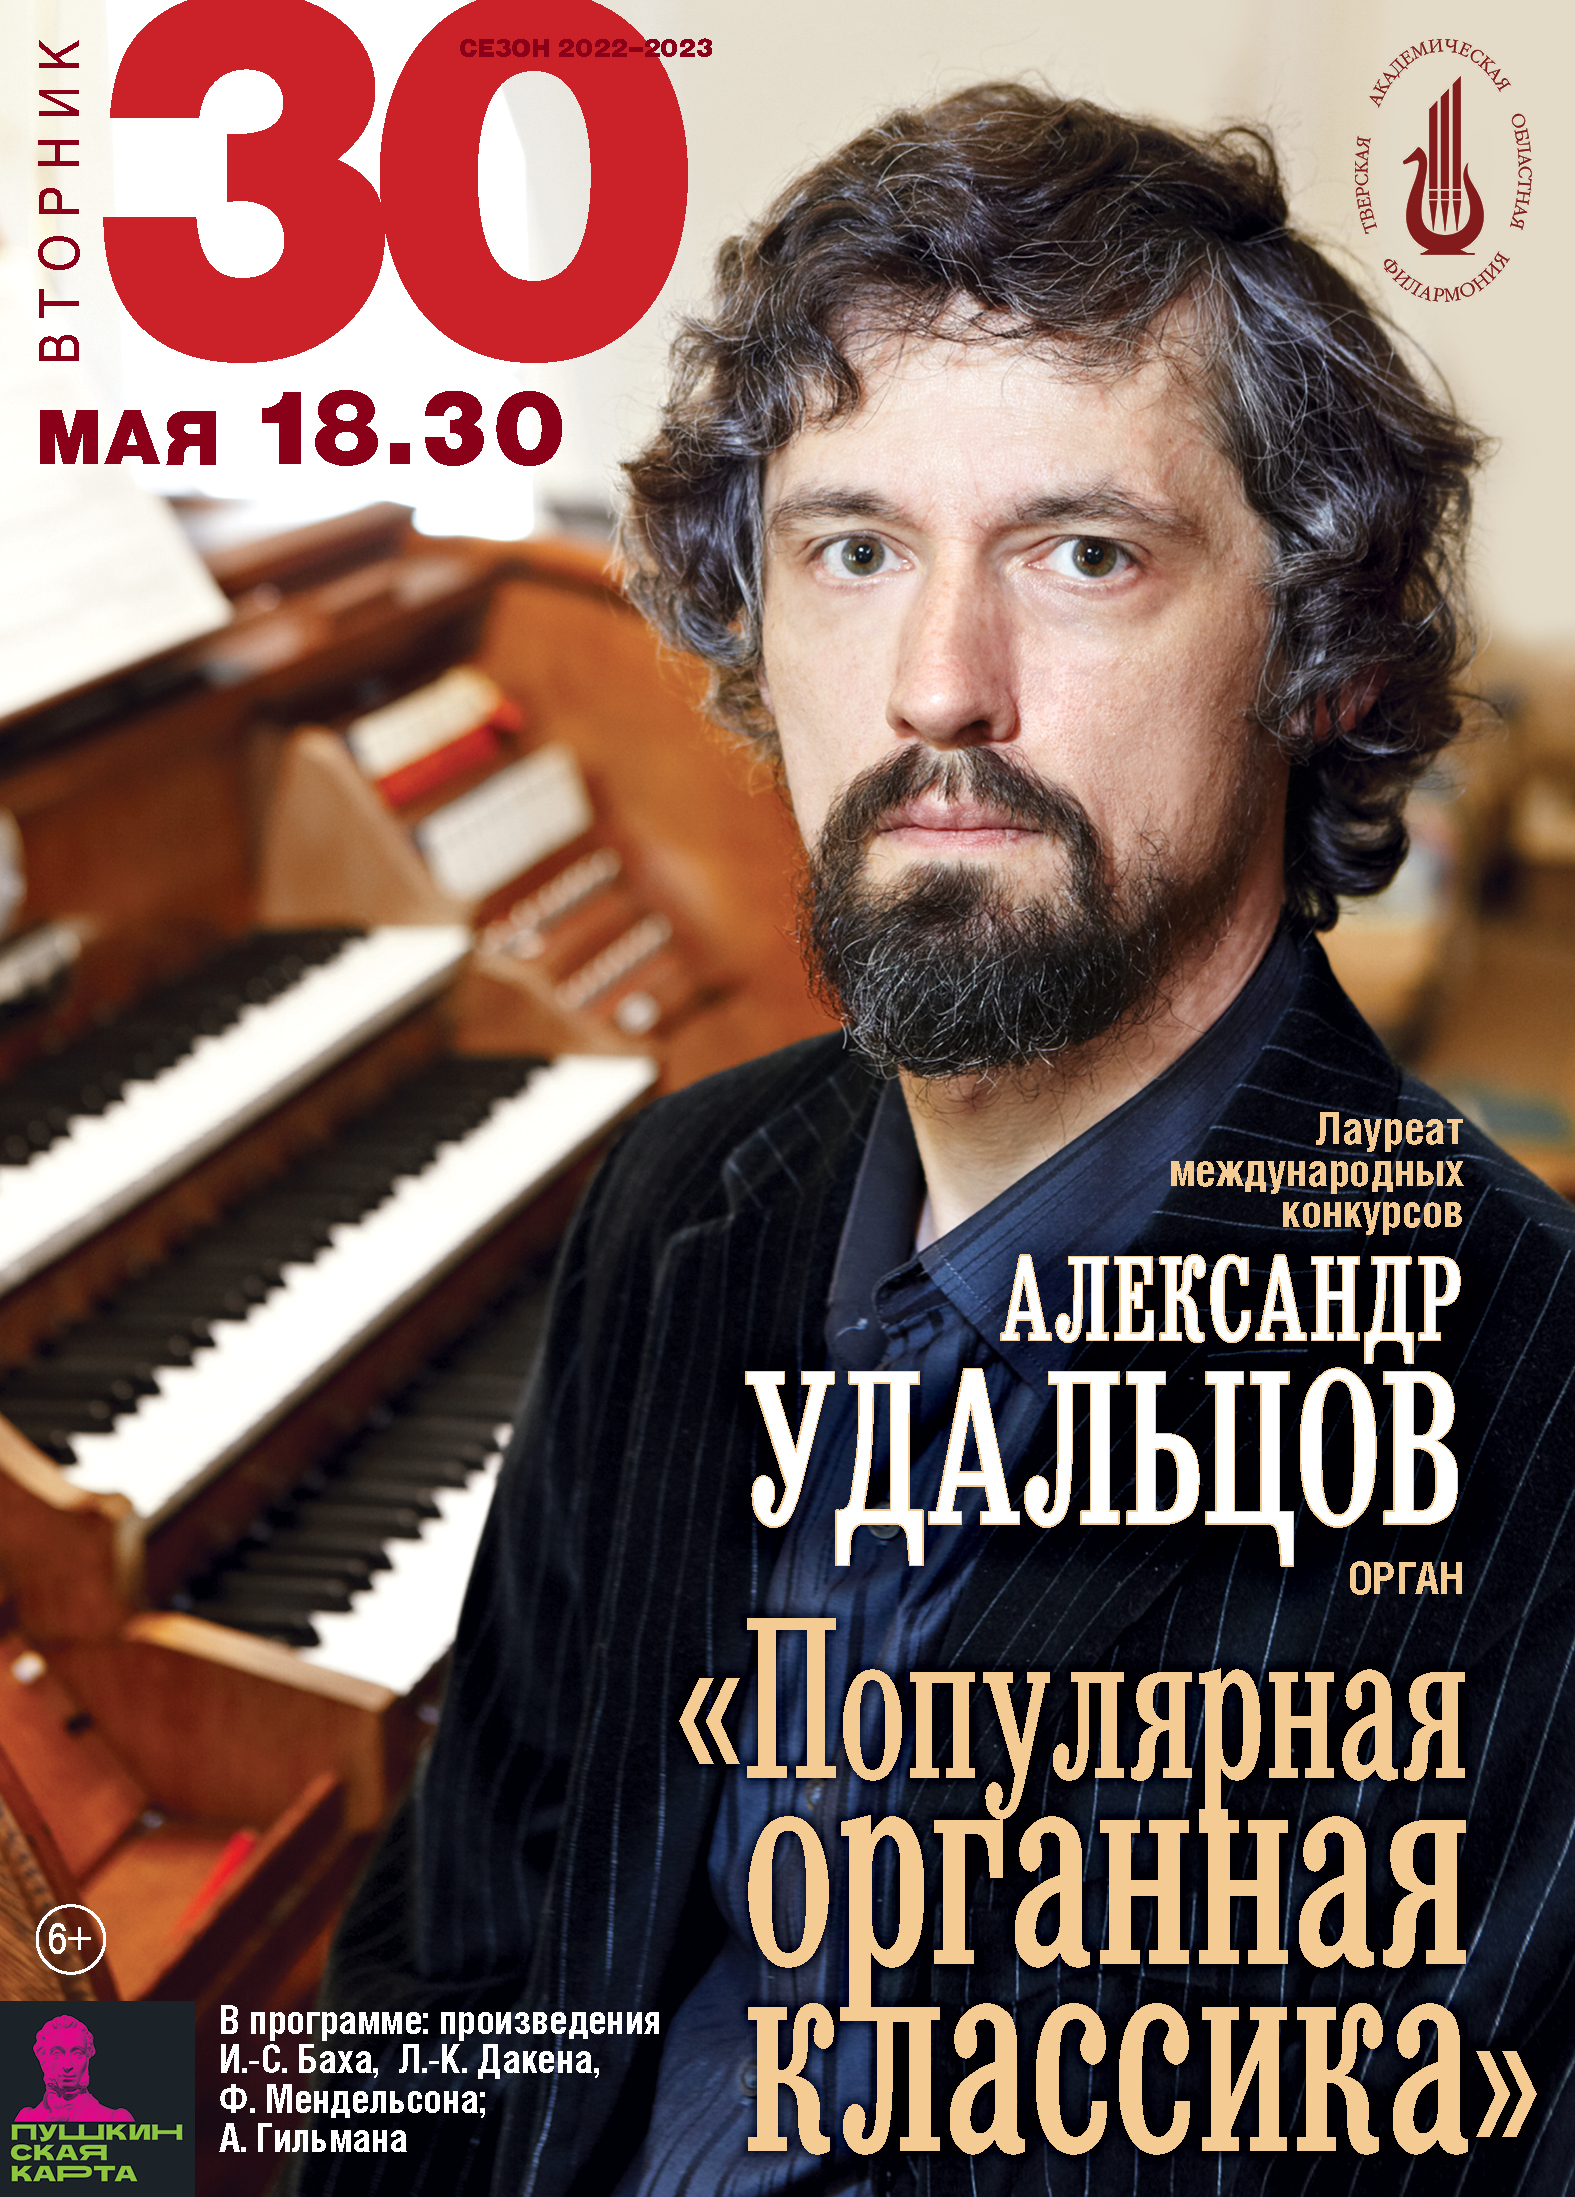 Тверская филармония приглашает на концерт органиста Александра Удальцова